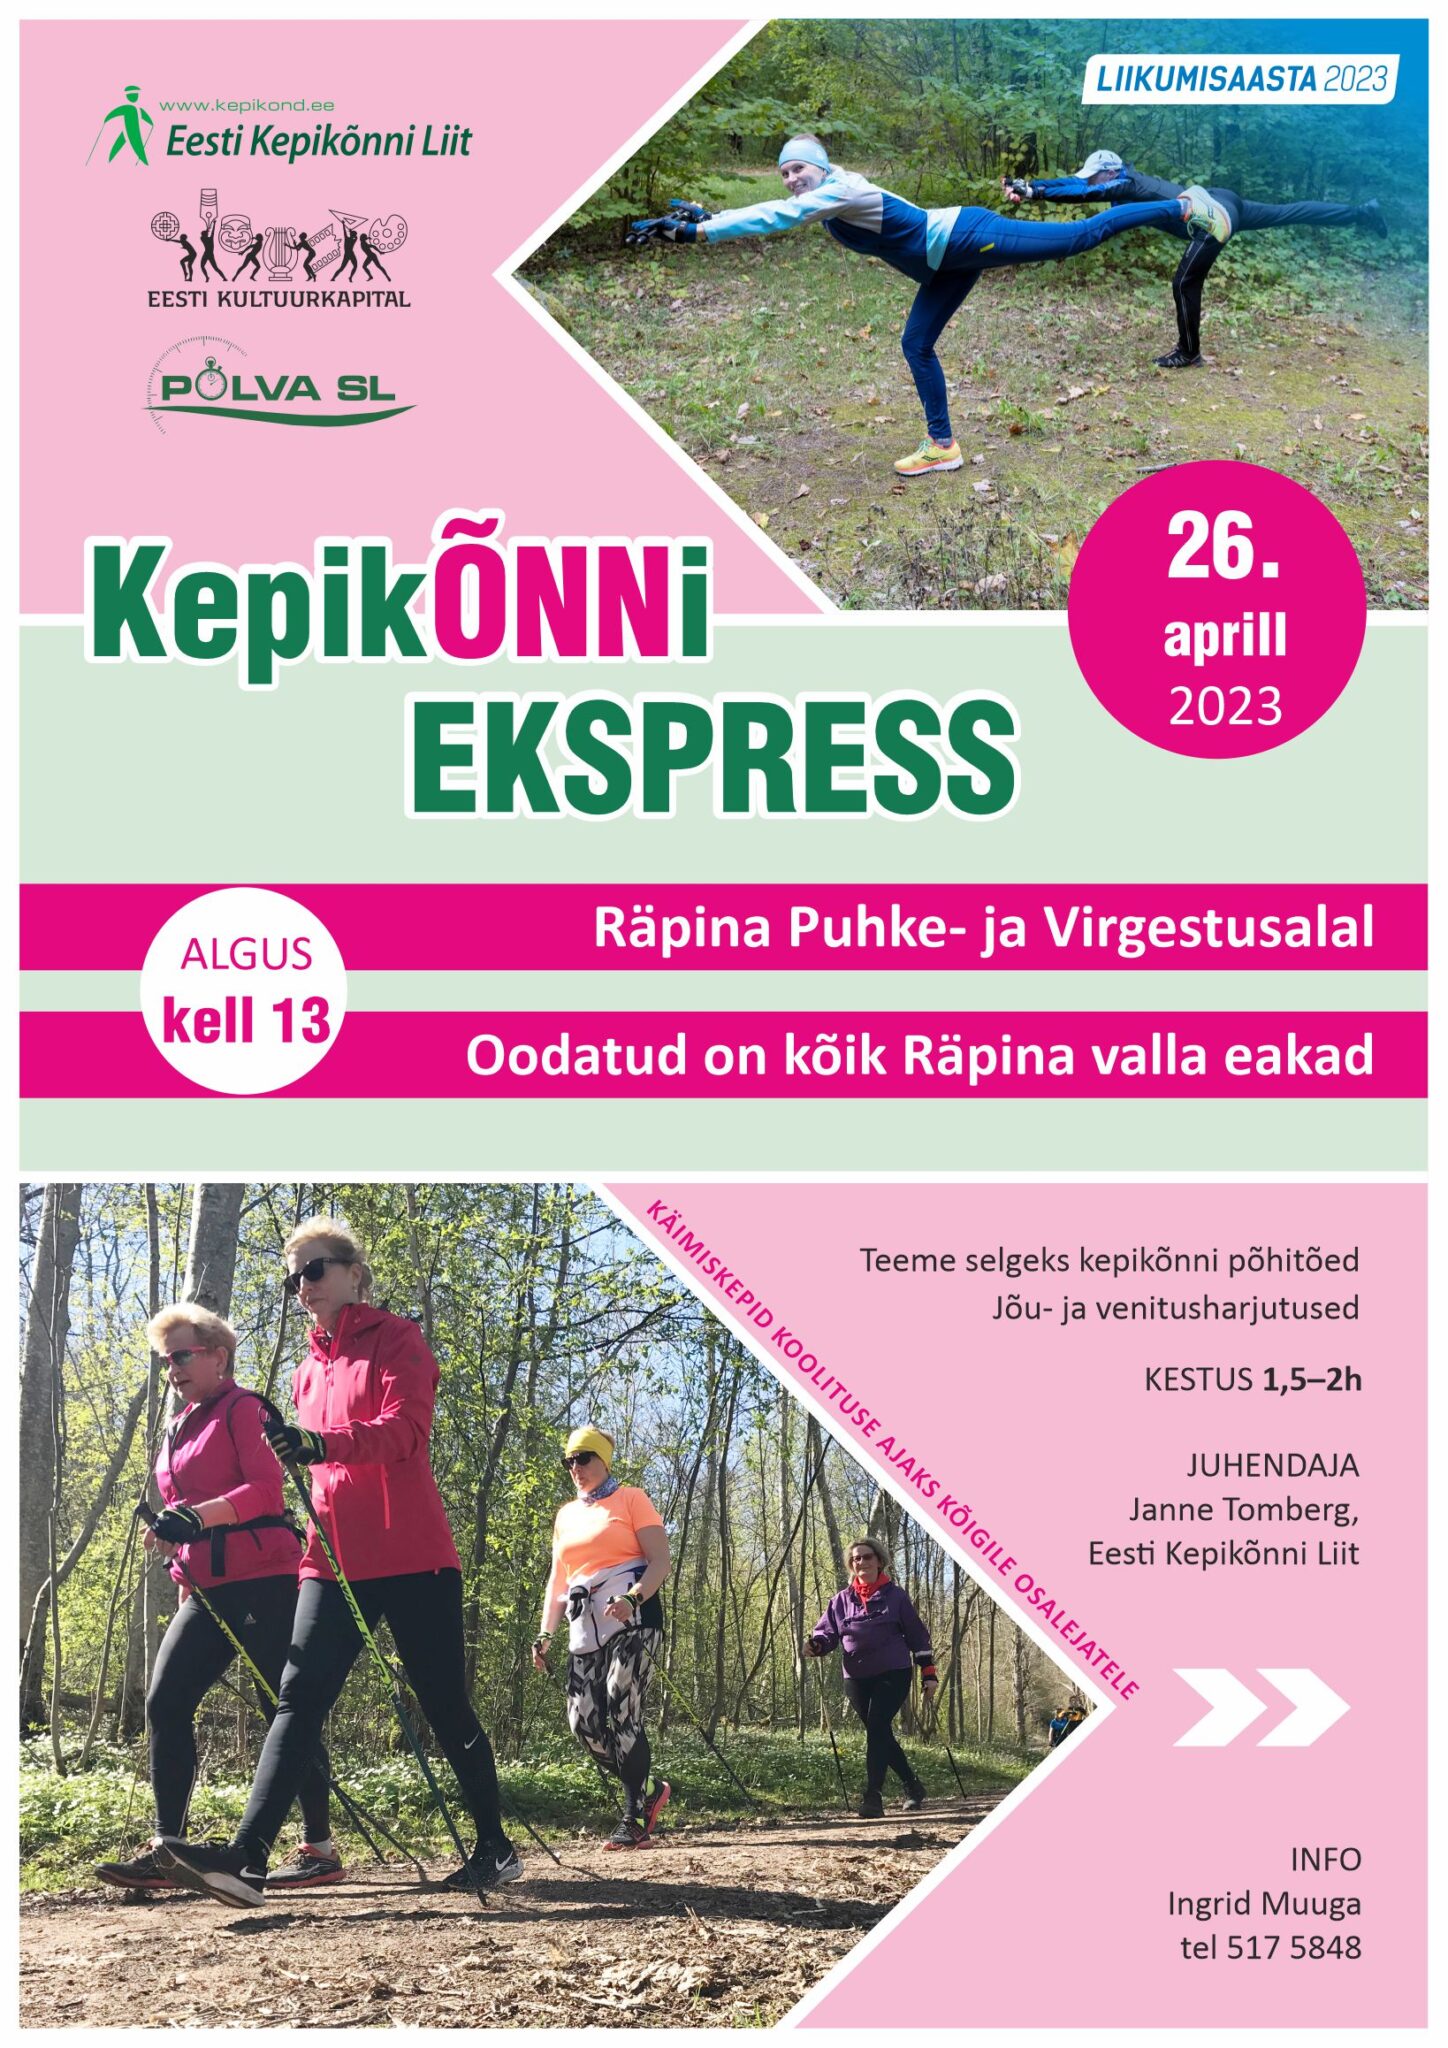 Kepikõnni ekspress vanemaealistele @ Räpina puhke- ja virgestusalal | Räpina | Põlva maakond | Eesti